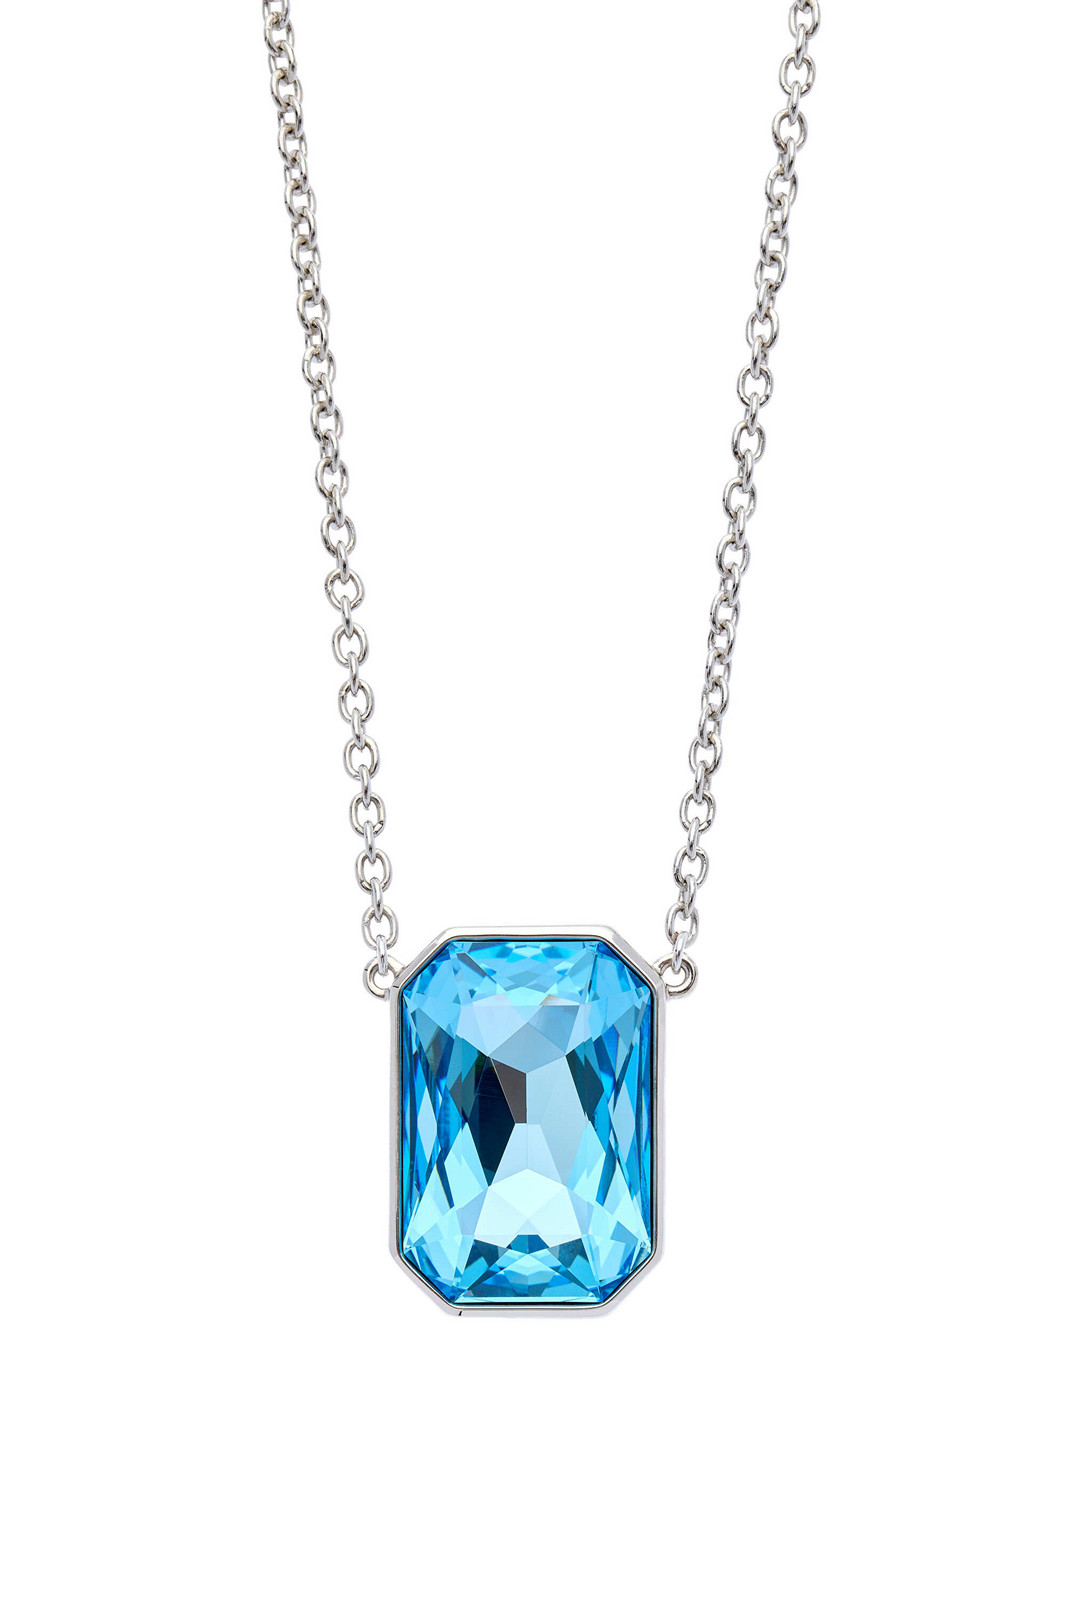 Oliver Weber Slušivý náhrdelník s modrým krystalem Swarovski 12449 202